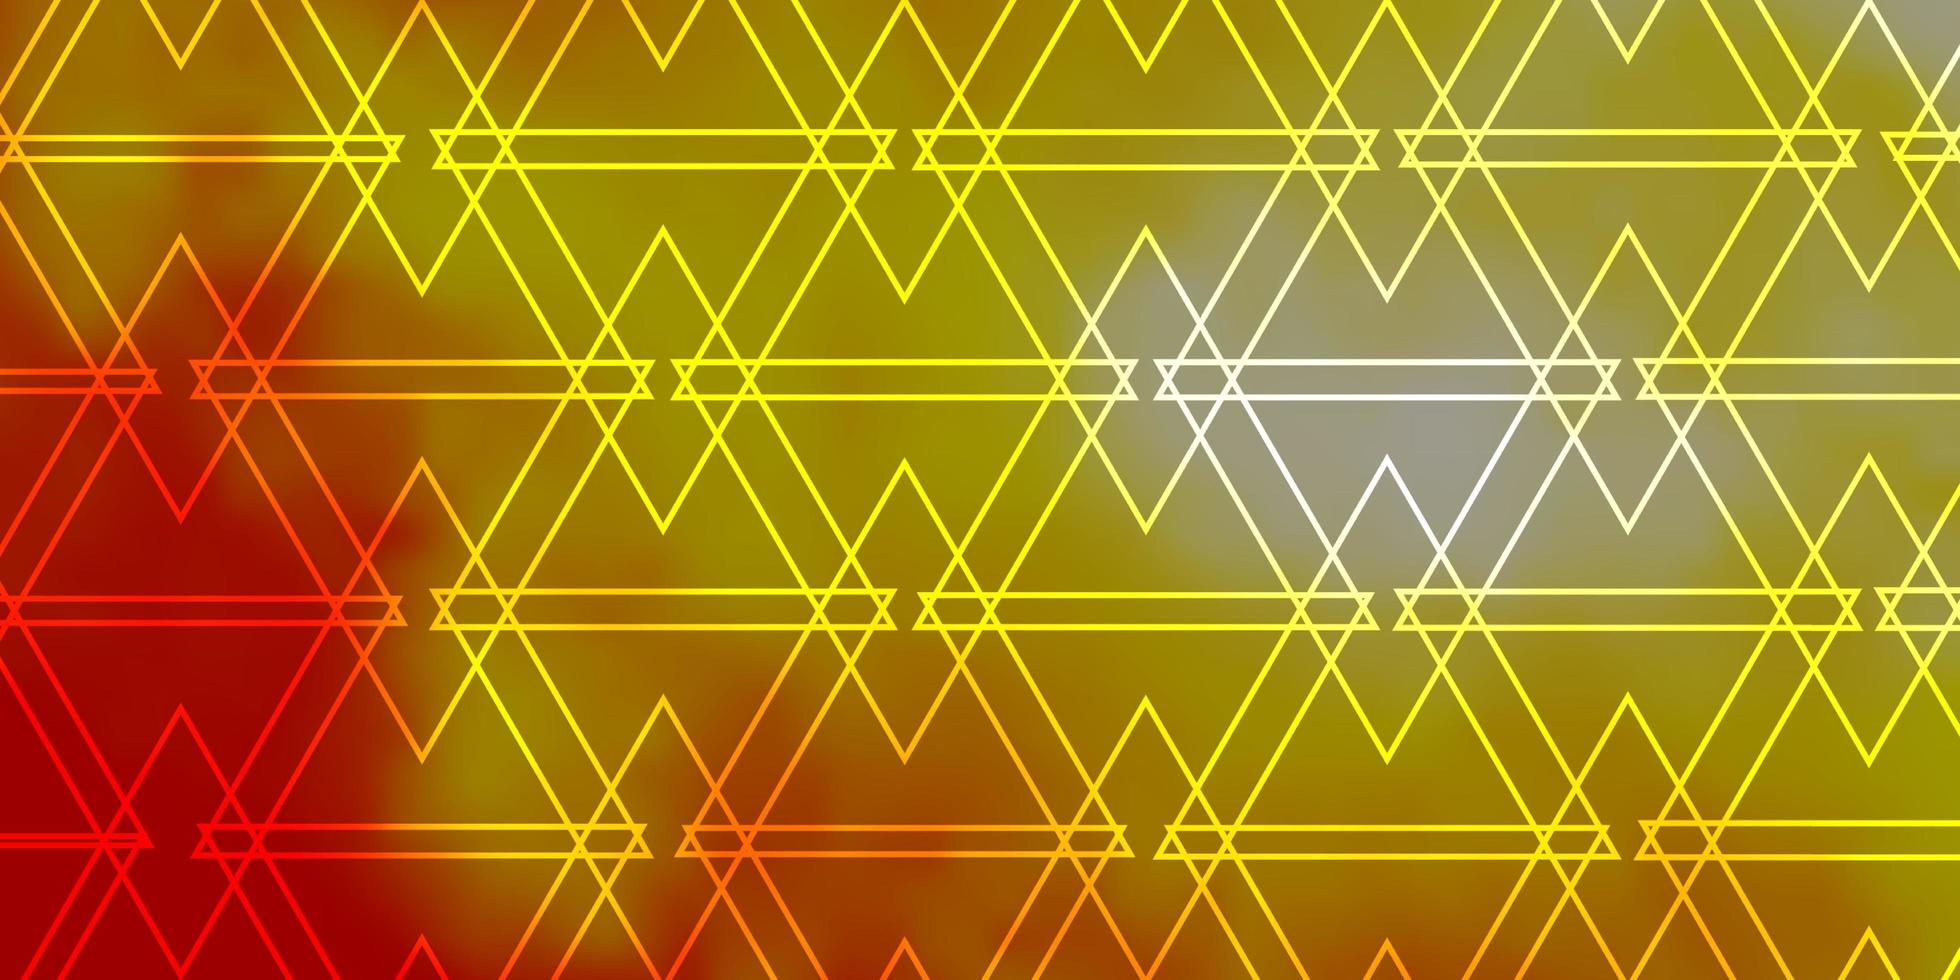 layout de vetor laranja claro com linhas e triângulos